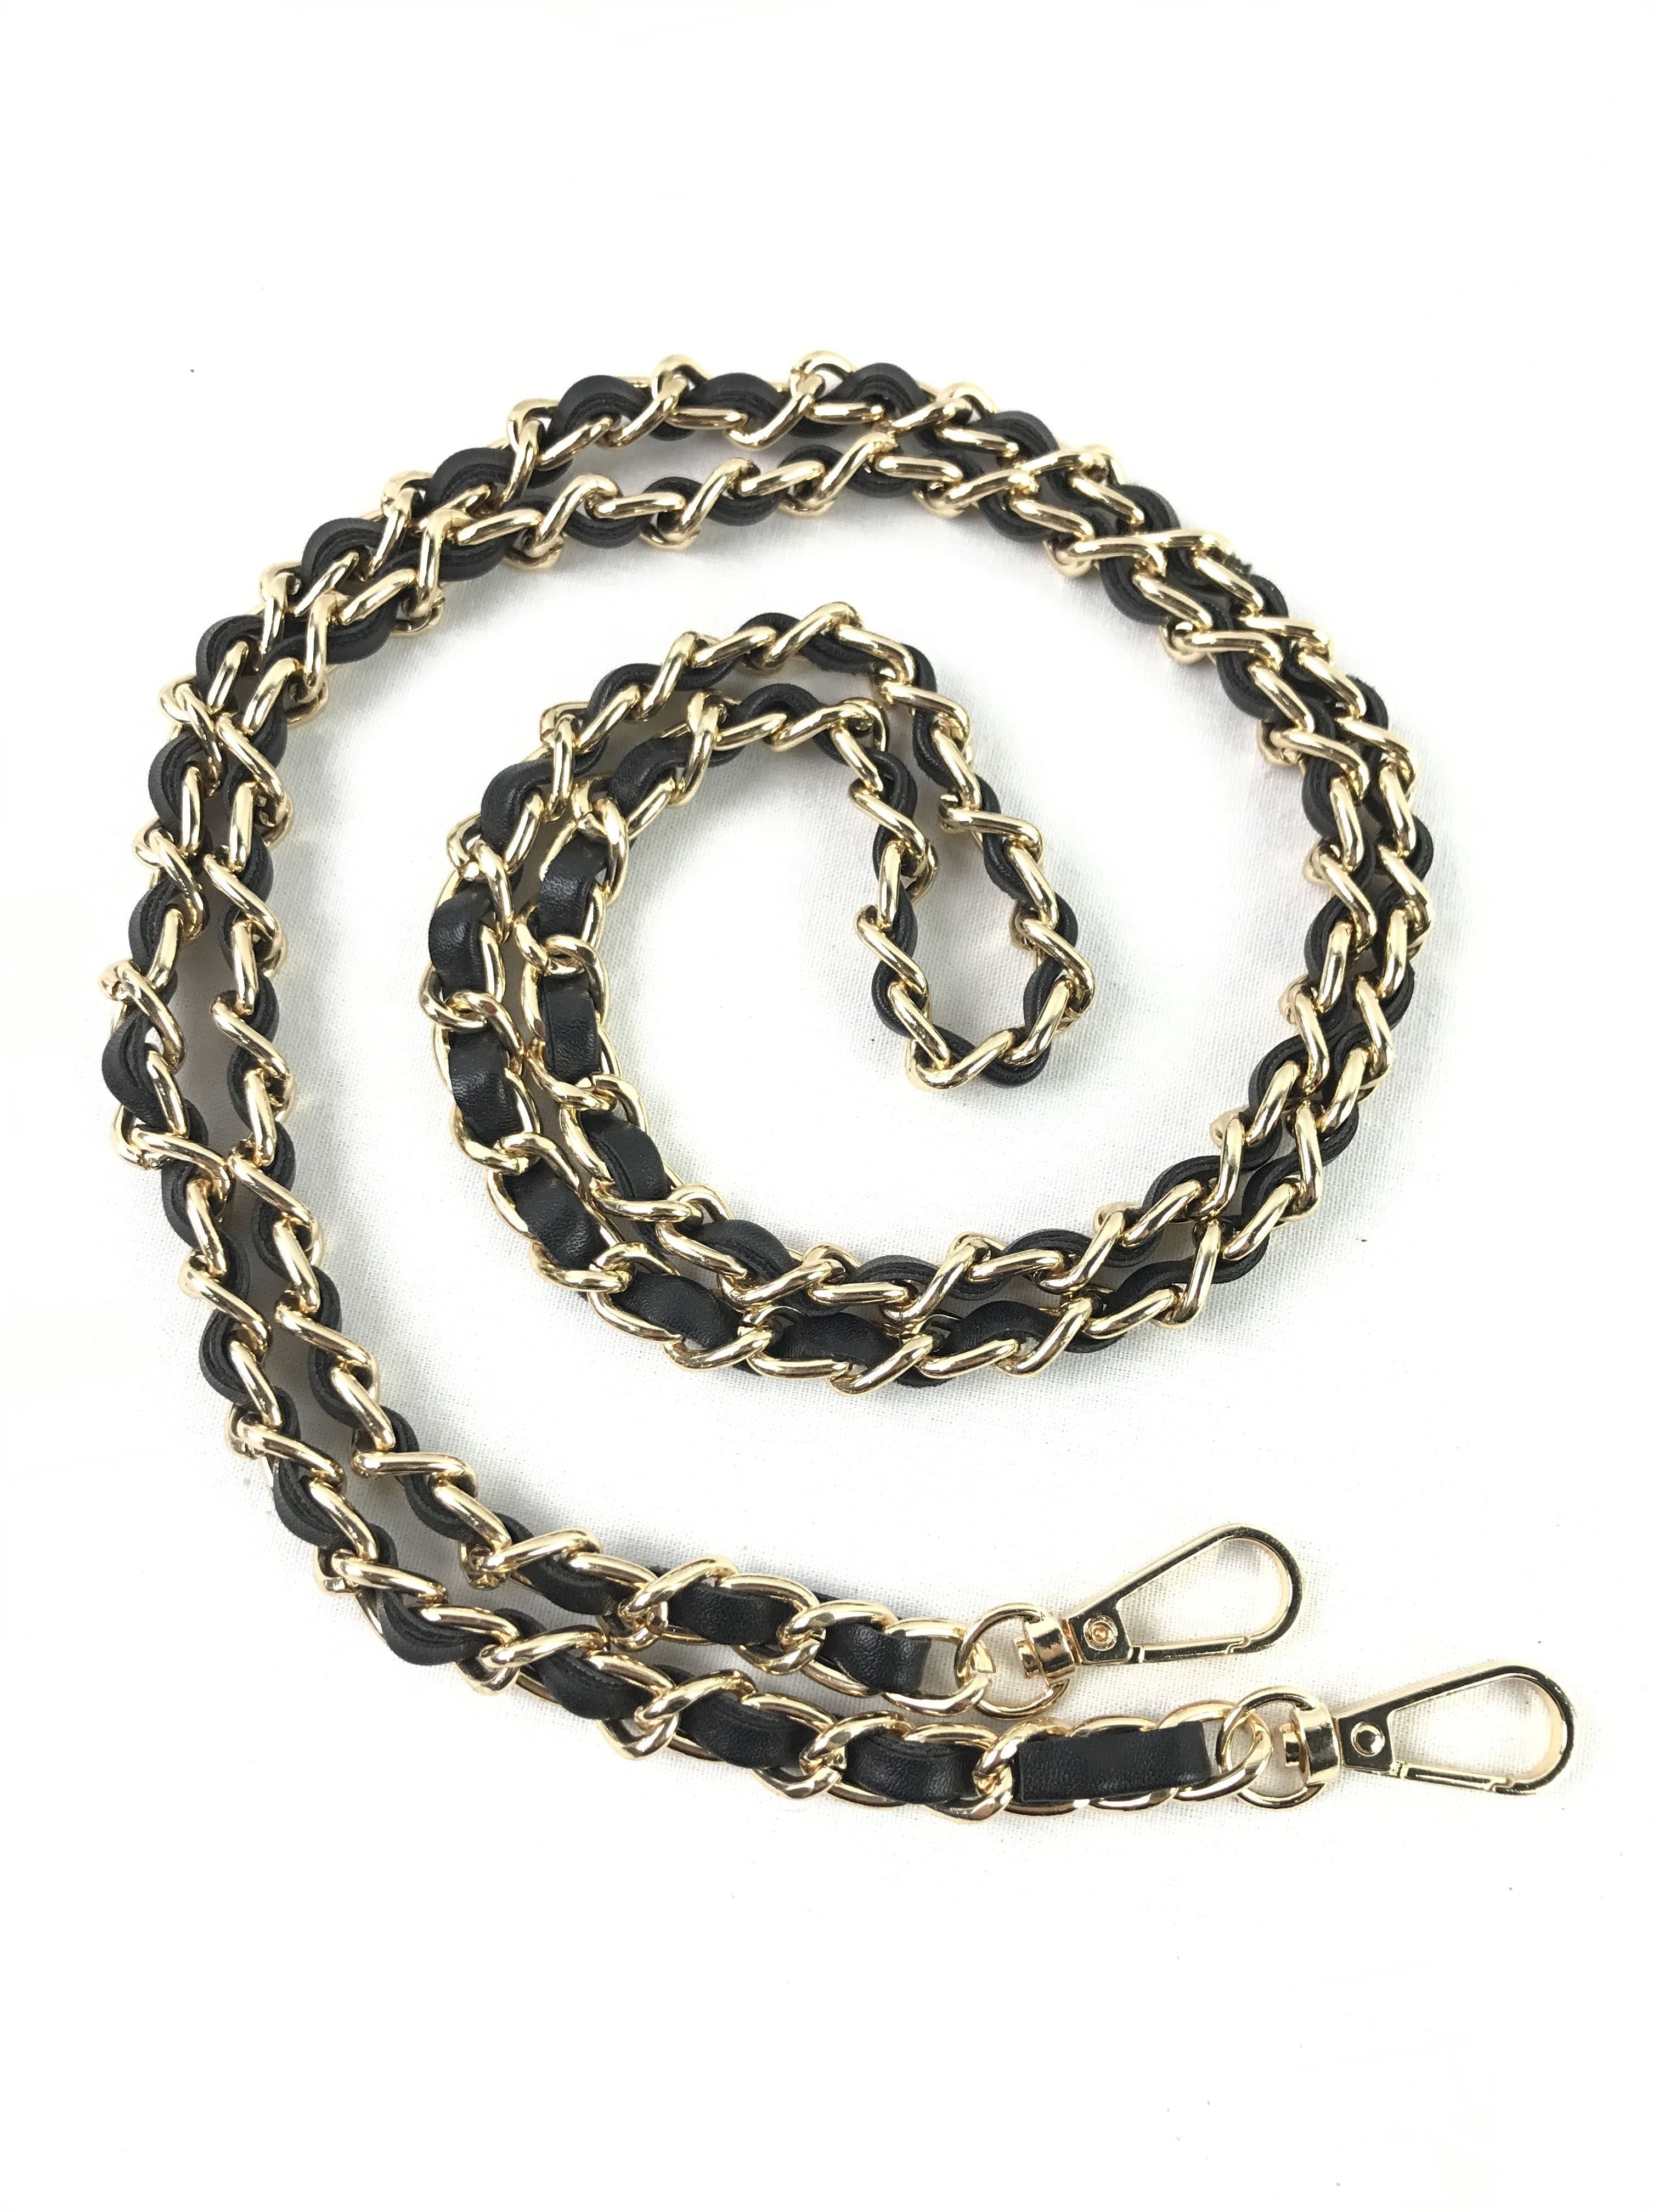 Black Leather/Chain Crossbody Strap w/GHW